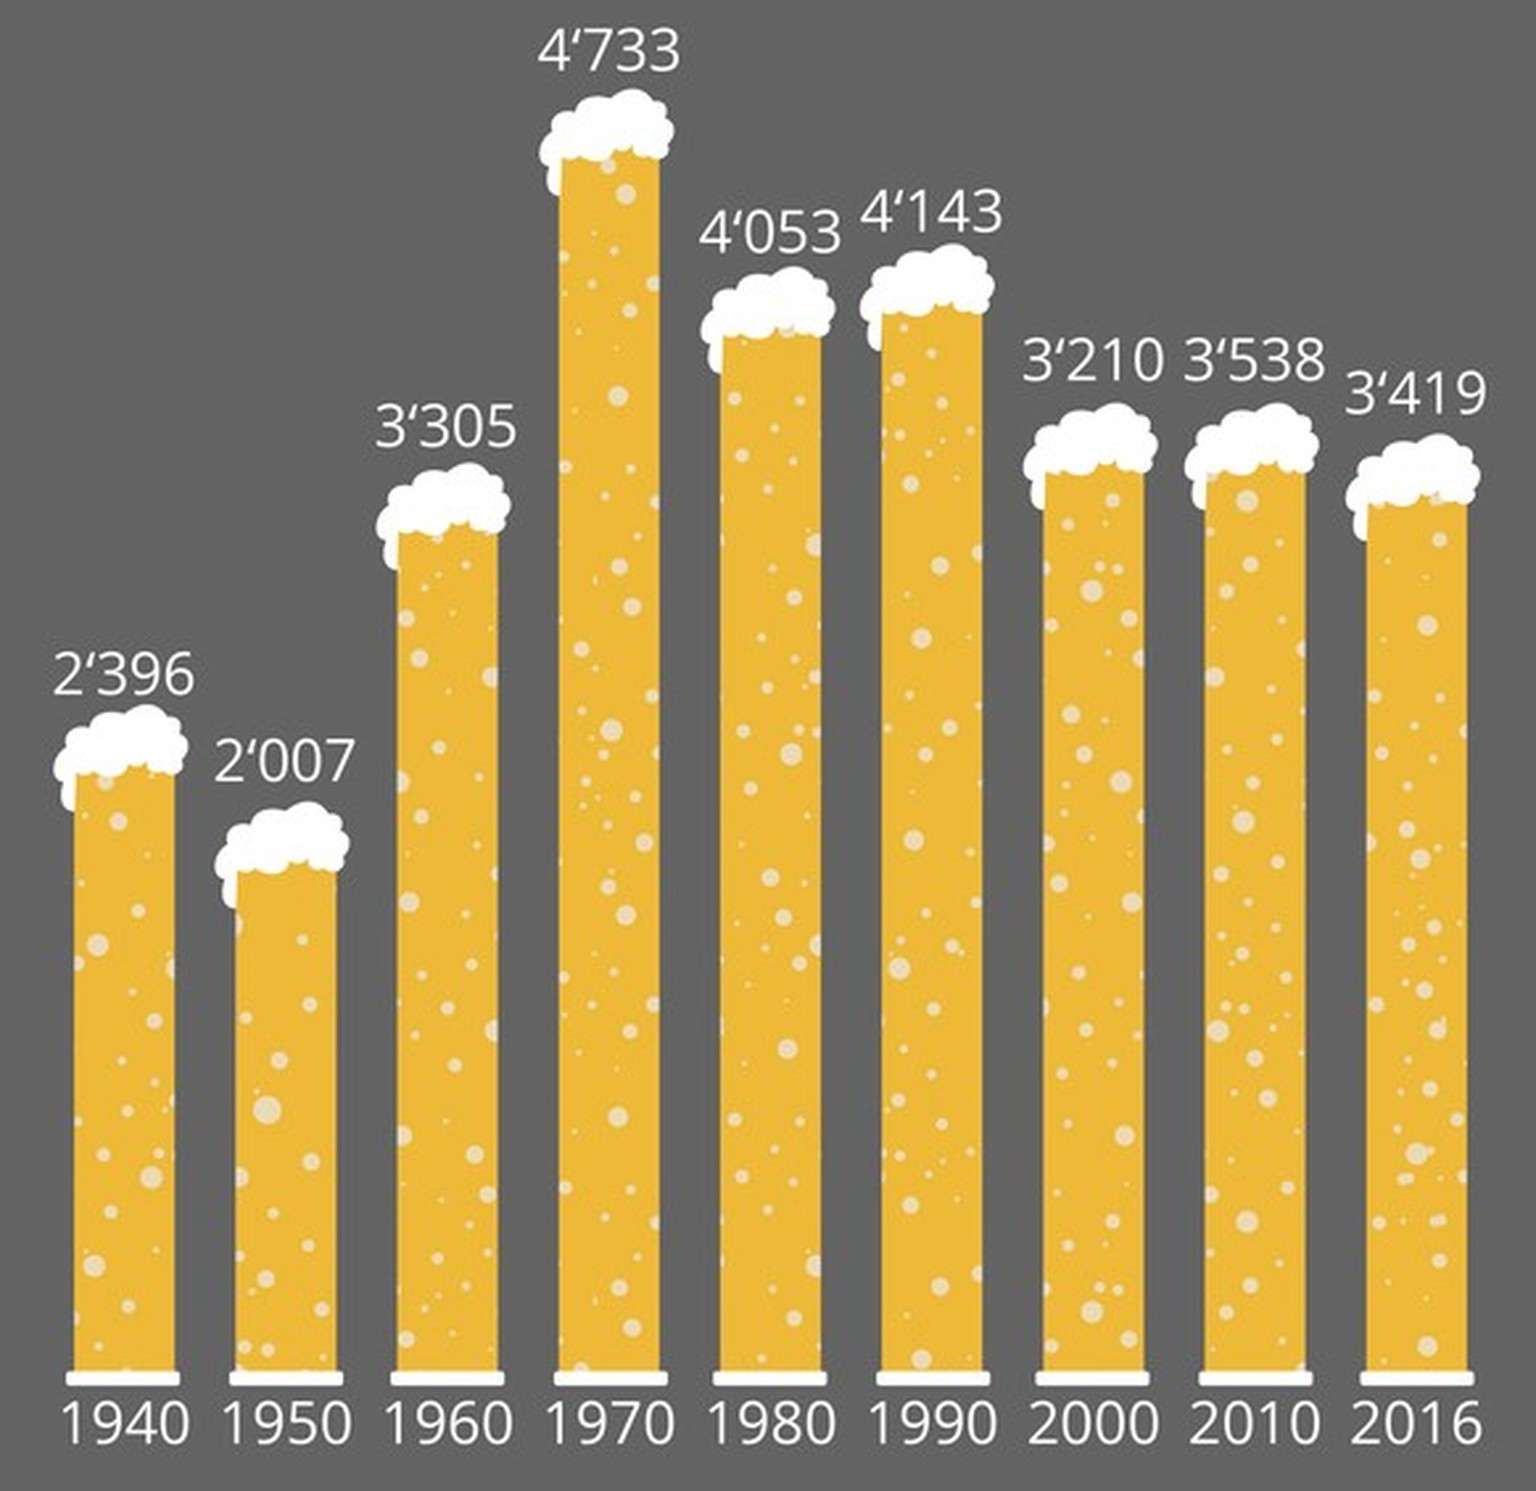 Bierproduktion in der Schweiz 1940-2016 in 1000 Hektolitern. Nie wurde mehr Bier produziert in der Schweiz als 1971.